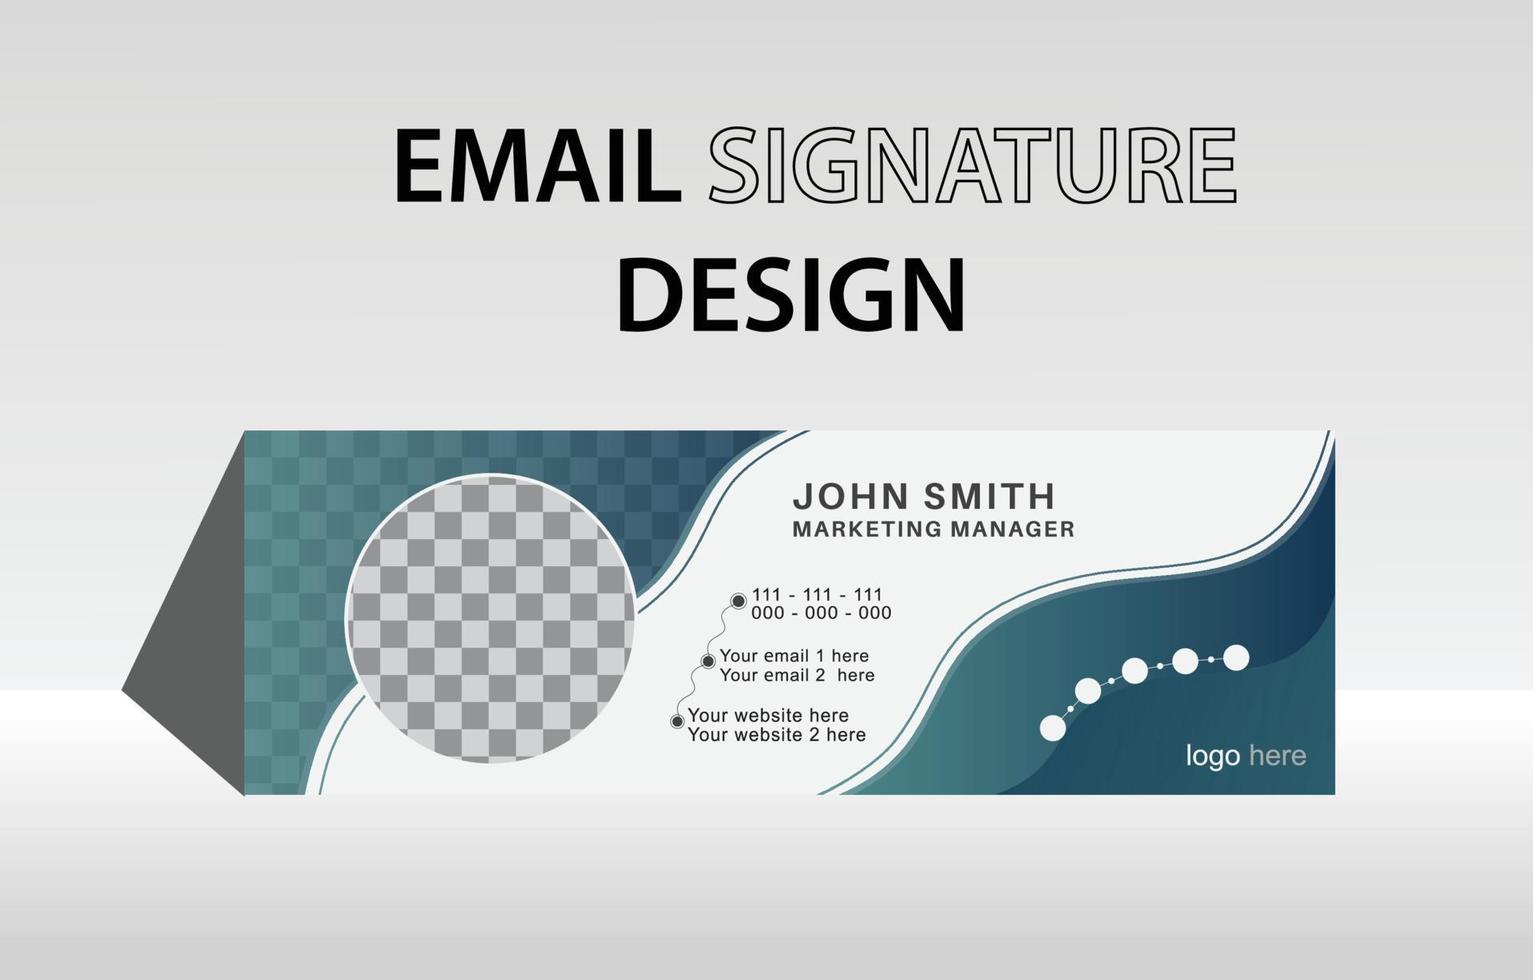 modern bedrijf e-mail handtekening en persoonlijk e-mail footer sjabloon ontwerp vector